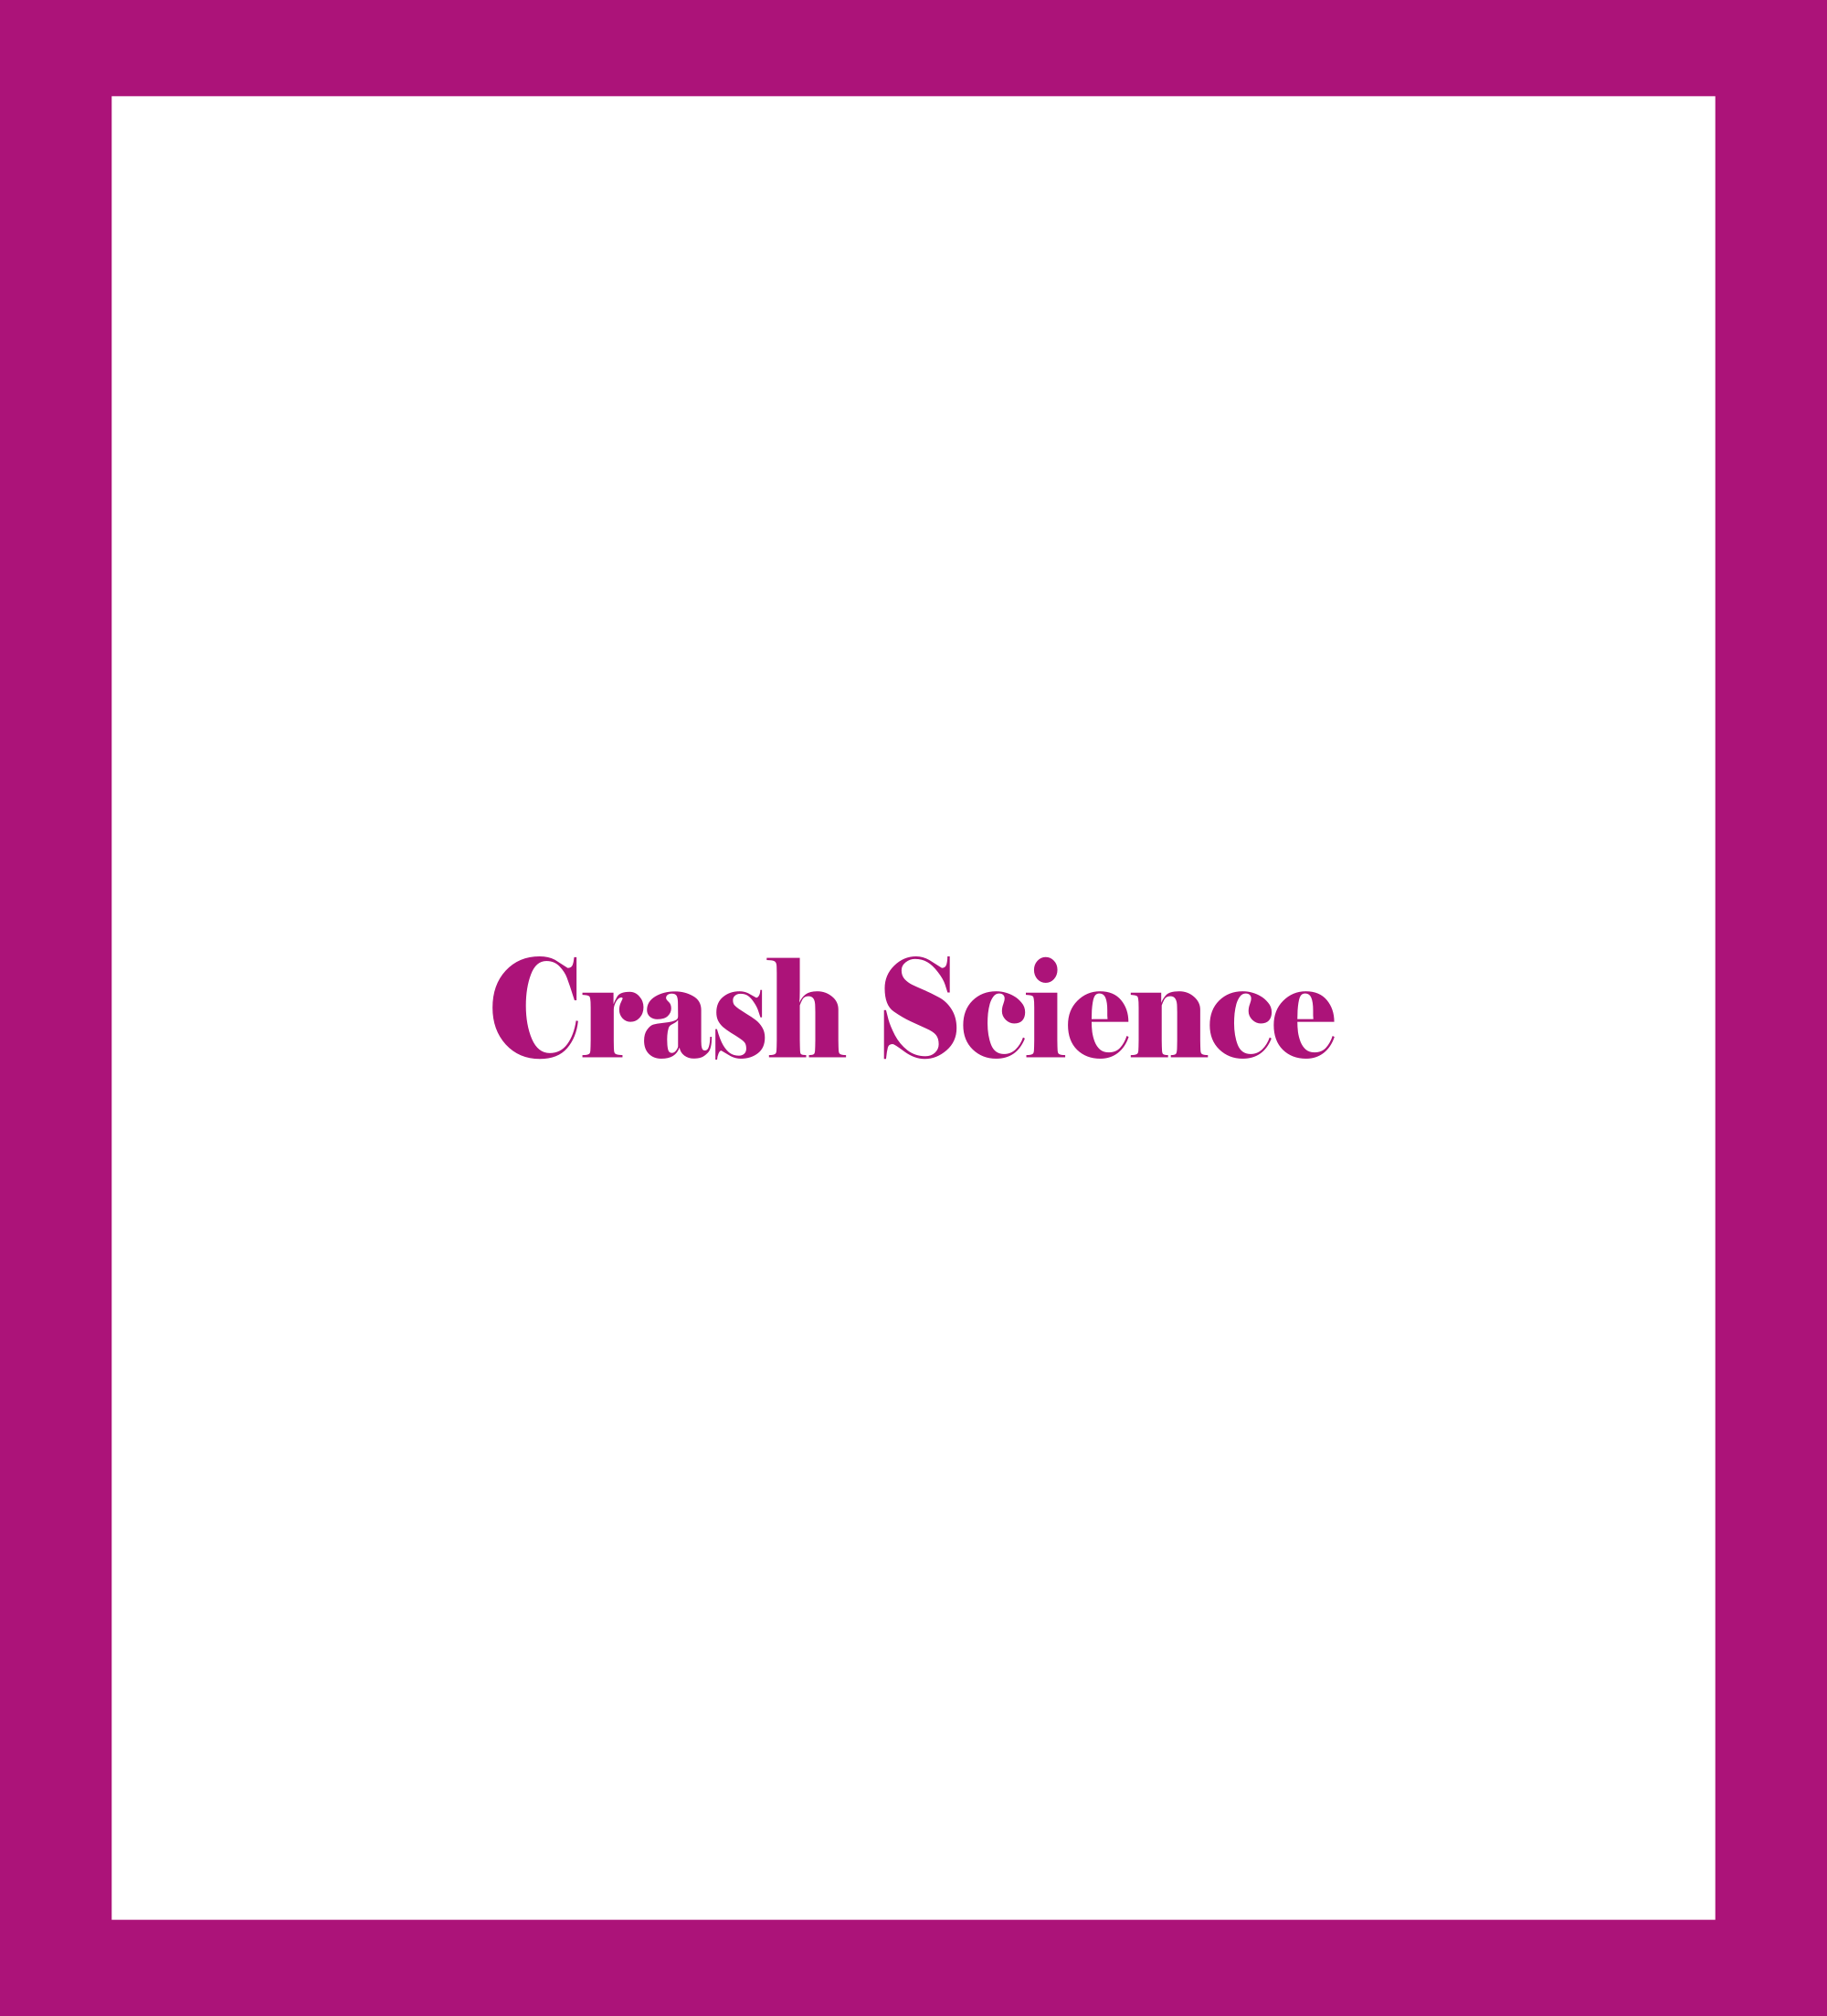 Caratula de Crash Science (La ciencia del choque) 